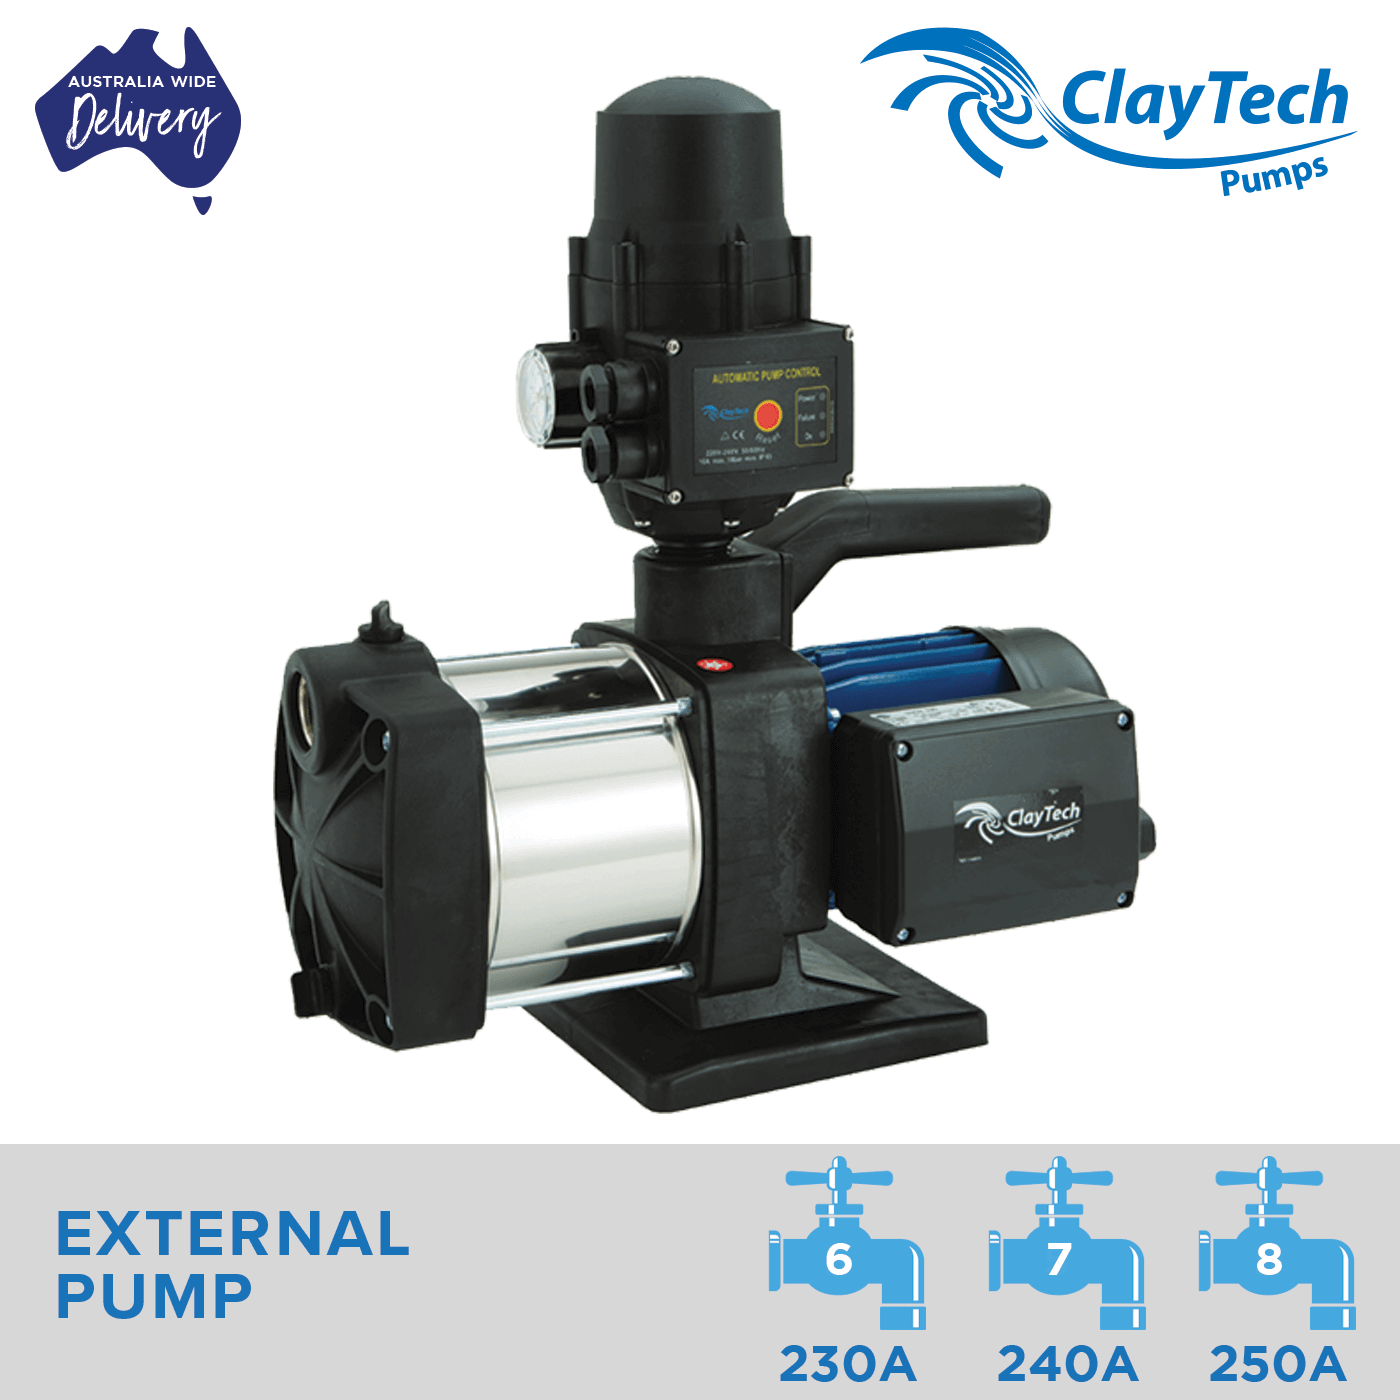 Claytech External Pump Inox Series